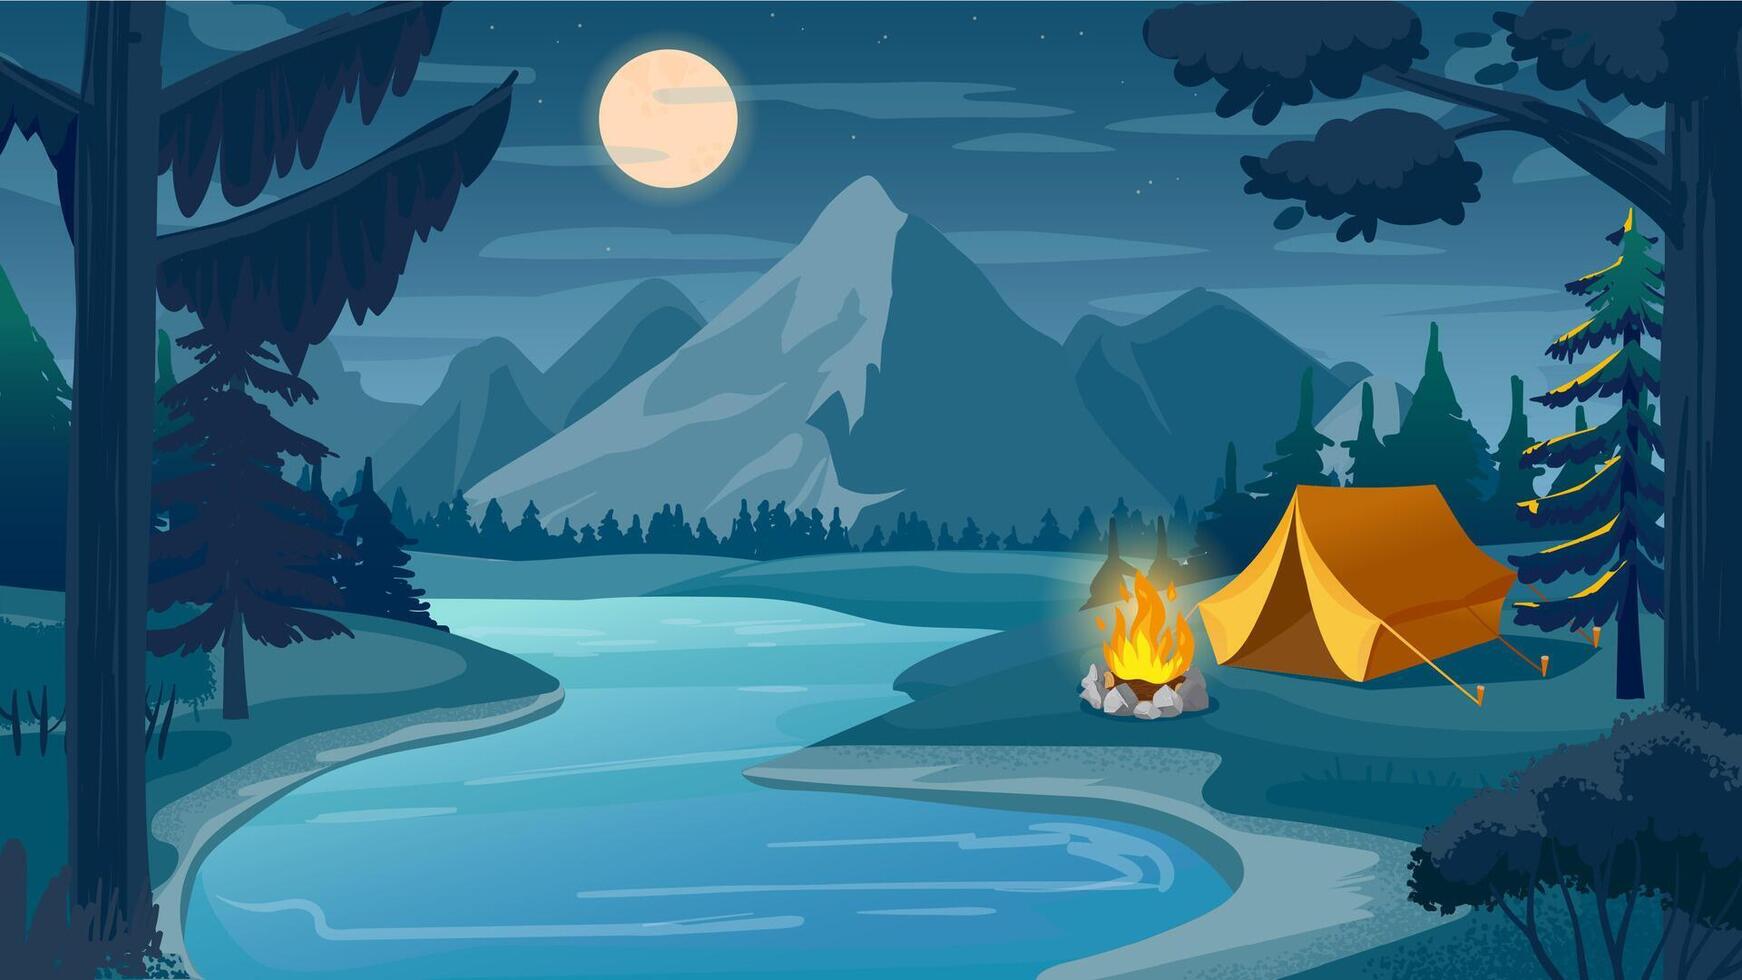 montaña noche cámping. dibujos animados bosque paisaje con lago, tienda y hoguera, cielo con Luna. excursionismo aventura, naturaleza turismo vector escena